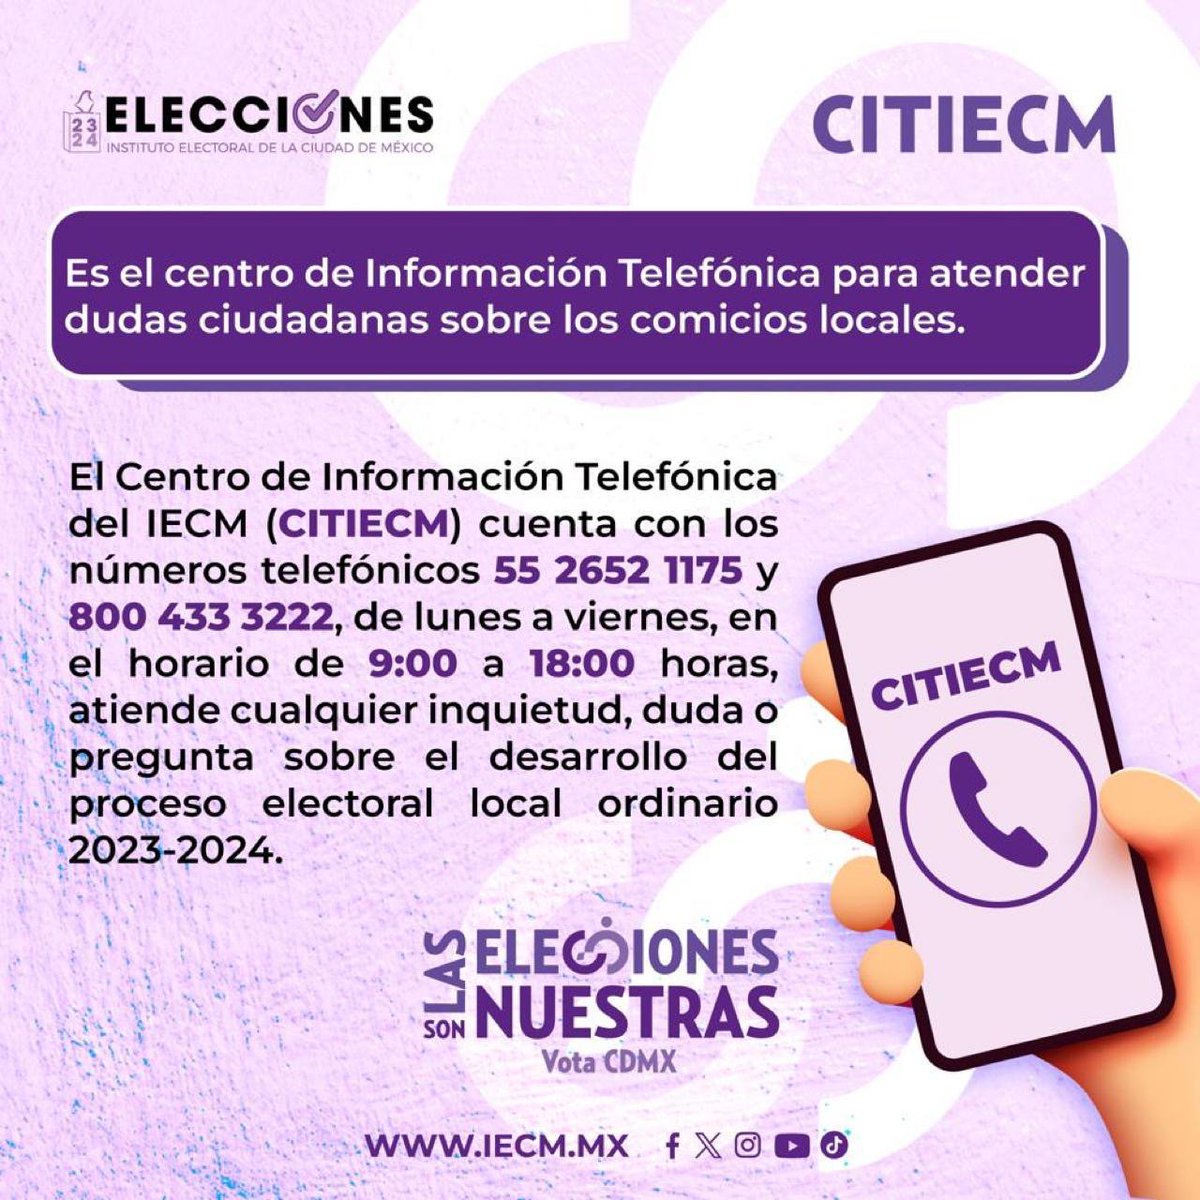 👉 ¿Tienes dudas sobre las elecciones en la #CDMX? 🗨️ El @IECM implementa el Centro de Información Telefónica en donde se responderá cualquier duda sobre las #EleccionesMX24 del próximo 2 de junio. ☎️ Llama a los teléfonos: 55 2652-1175 y 800 433-3222.